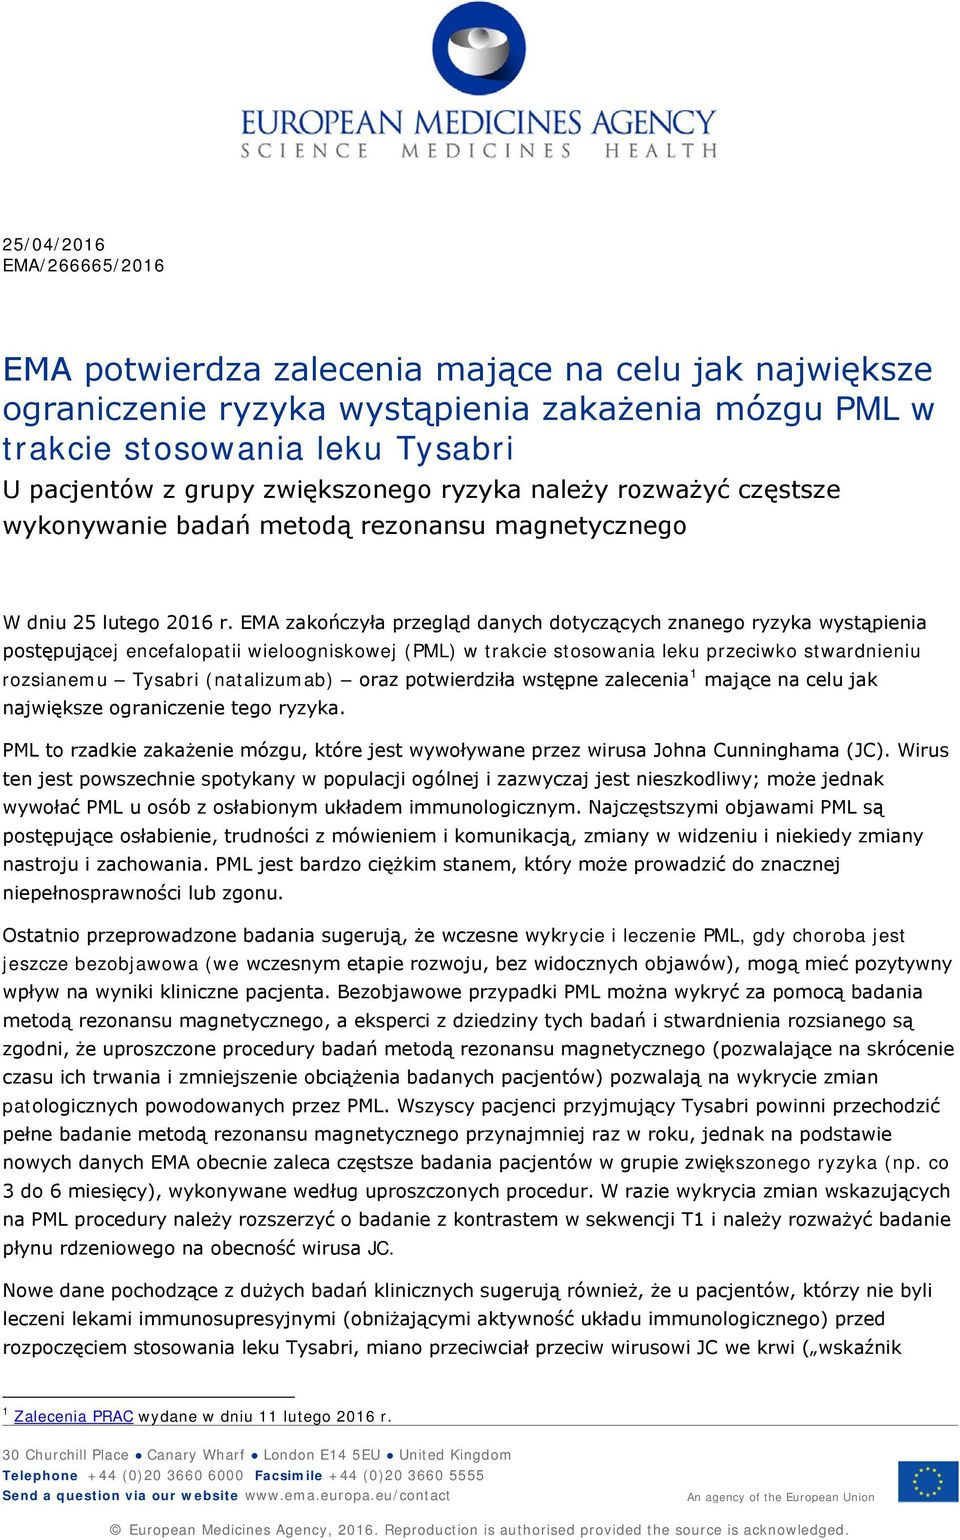 EMA zakończyła przegląd danych dotyczących znanego ryzyka wystąpienia postępującej encefalopatii wieloogniskowej (PML) w trakcie stosowania leku przeciwko stwardnieniu rozsianemu Tysabri